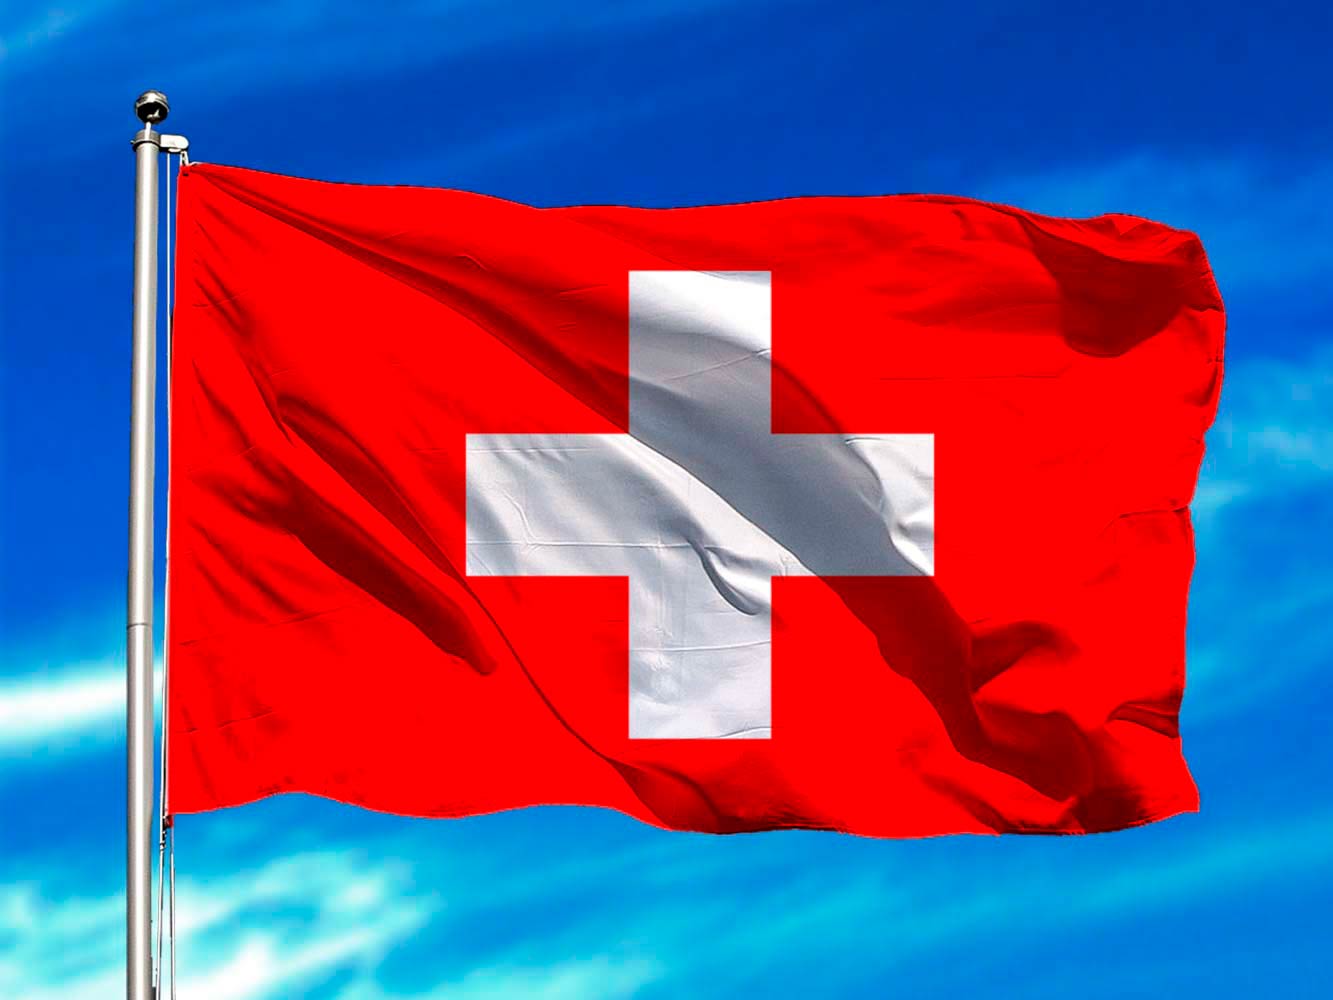 Bandera De Suiza Imágenes Historia Evolución Y Significado